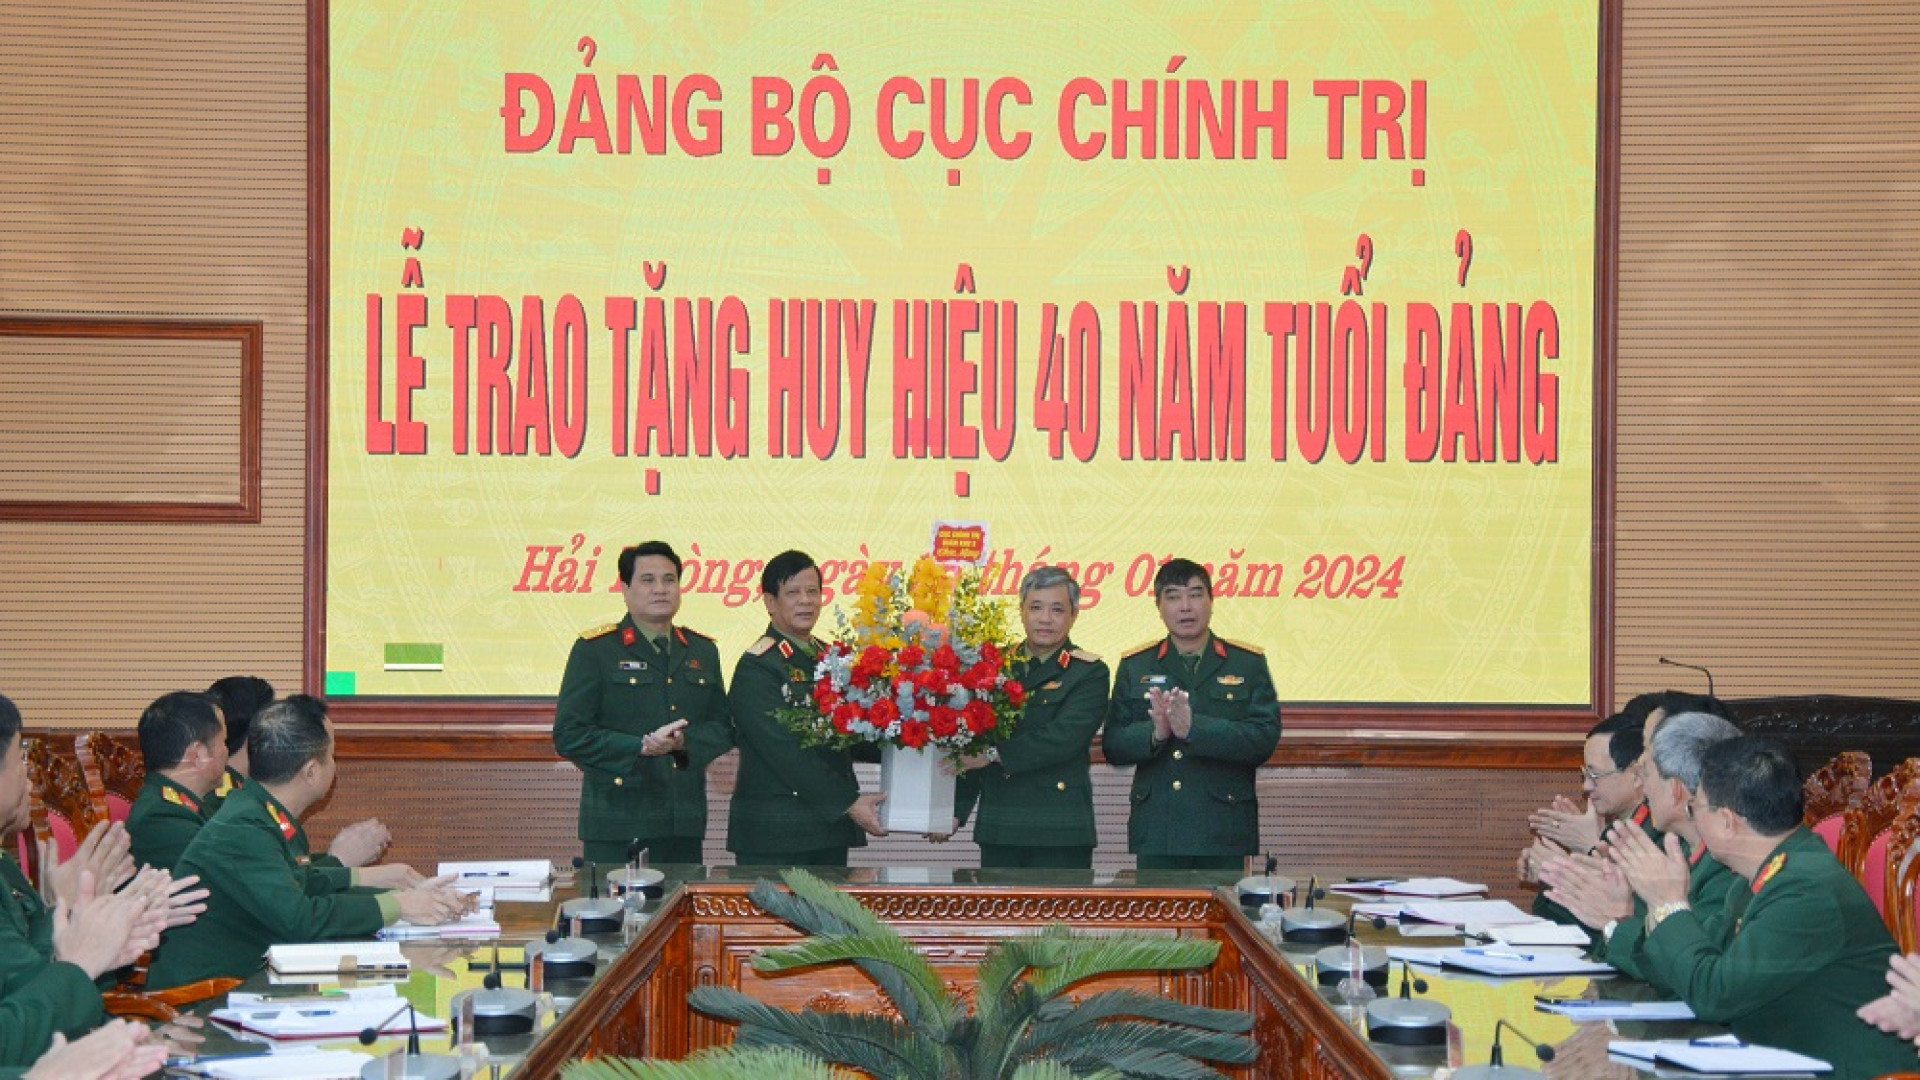 Trao tặng Huy hiệu 40 năm tuổi Đảng cho Thiếu tướng Nguyễn Huy Hoàng, Bí thư Đảng ủy Cục chính trị, Phó chủ nhiệm Chính trị Quân khu